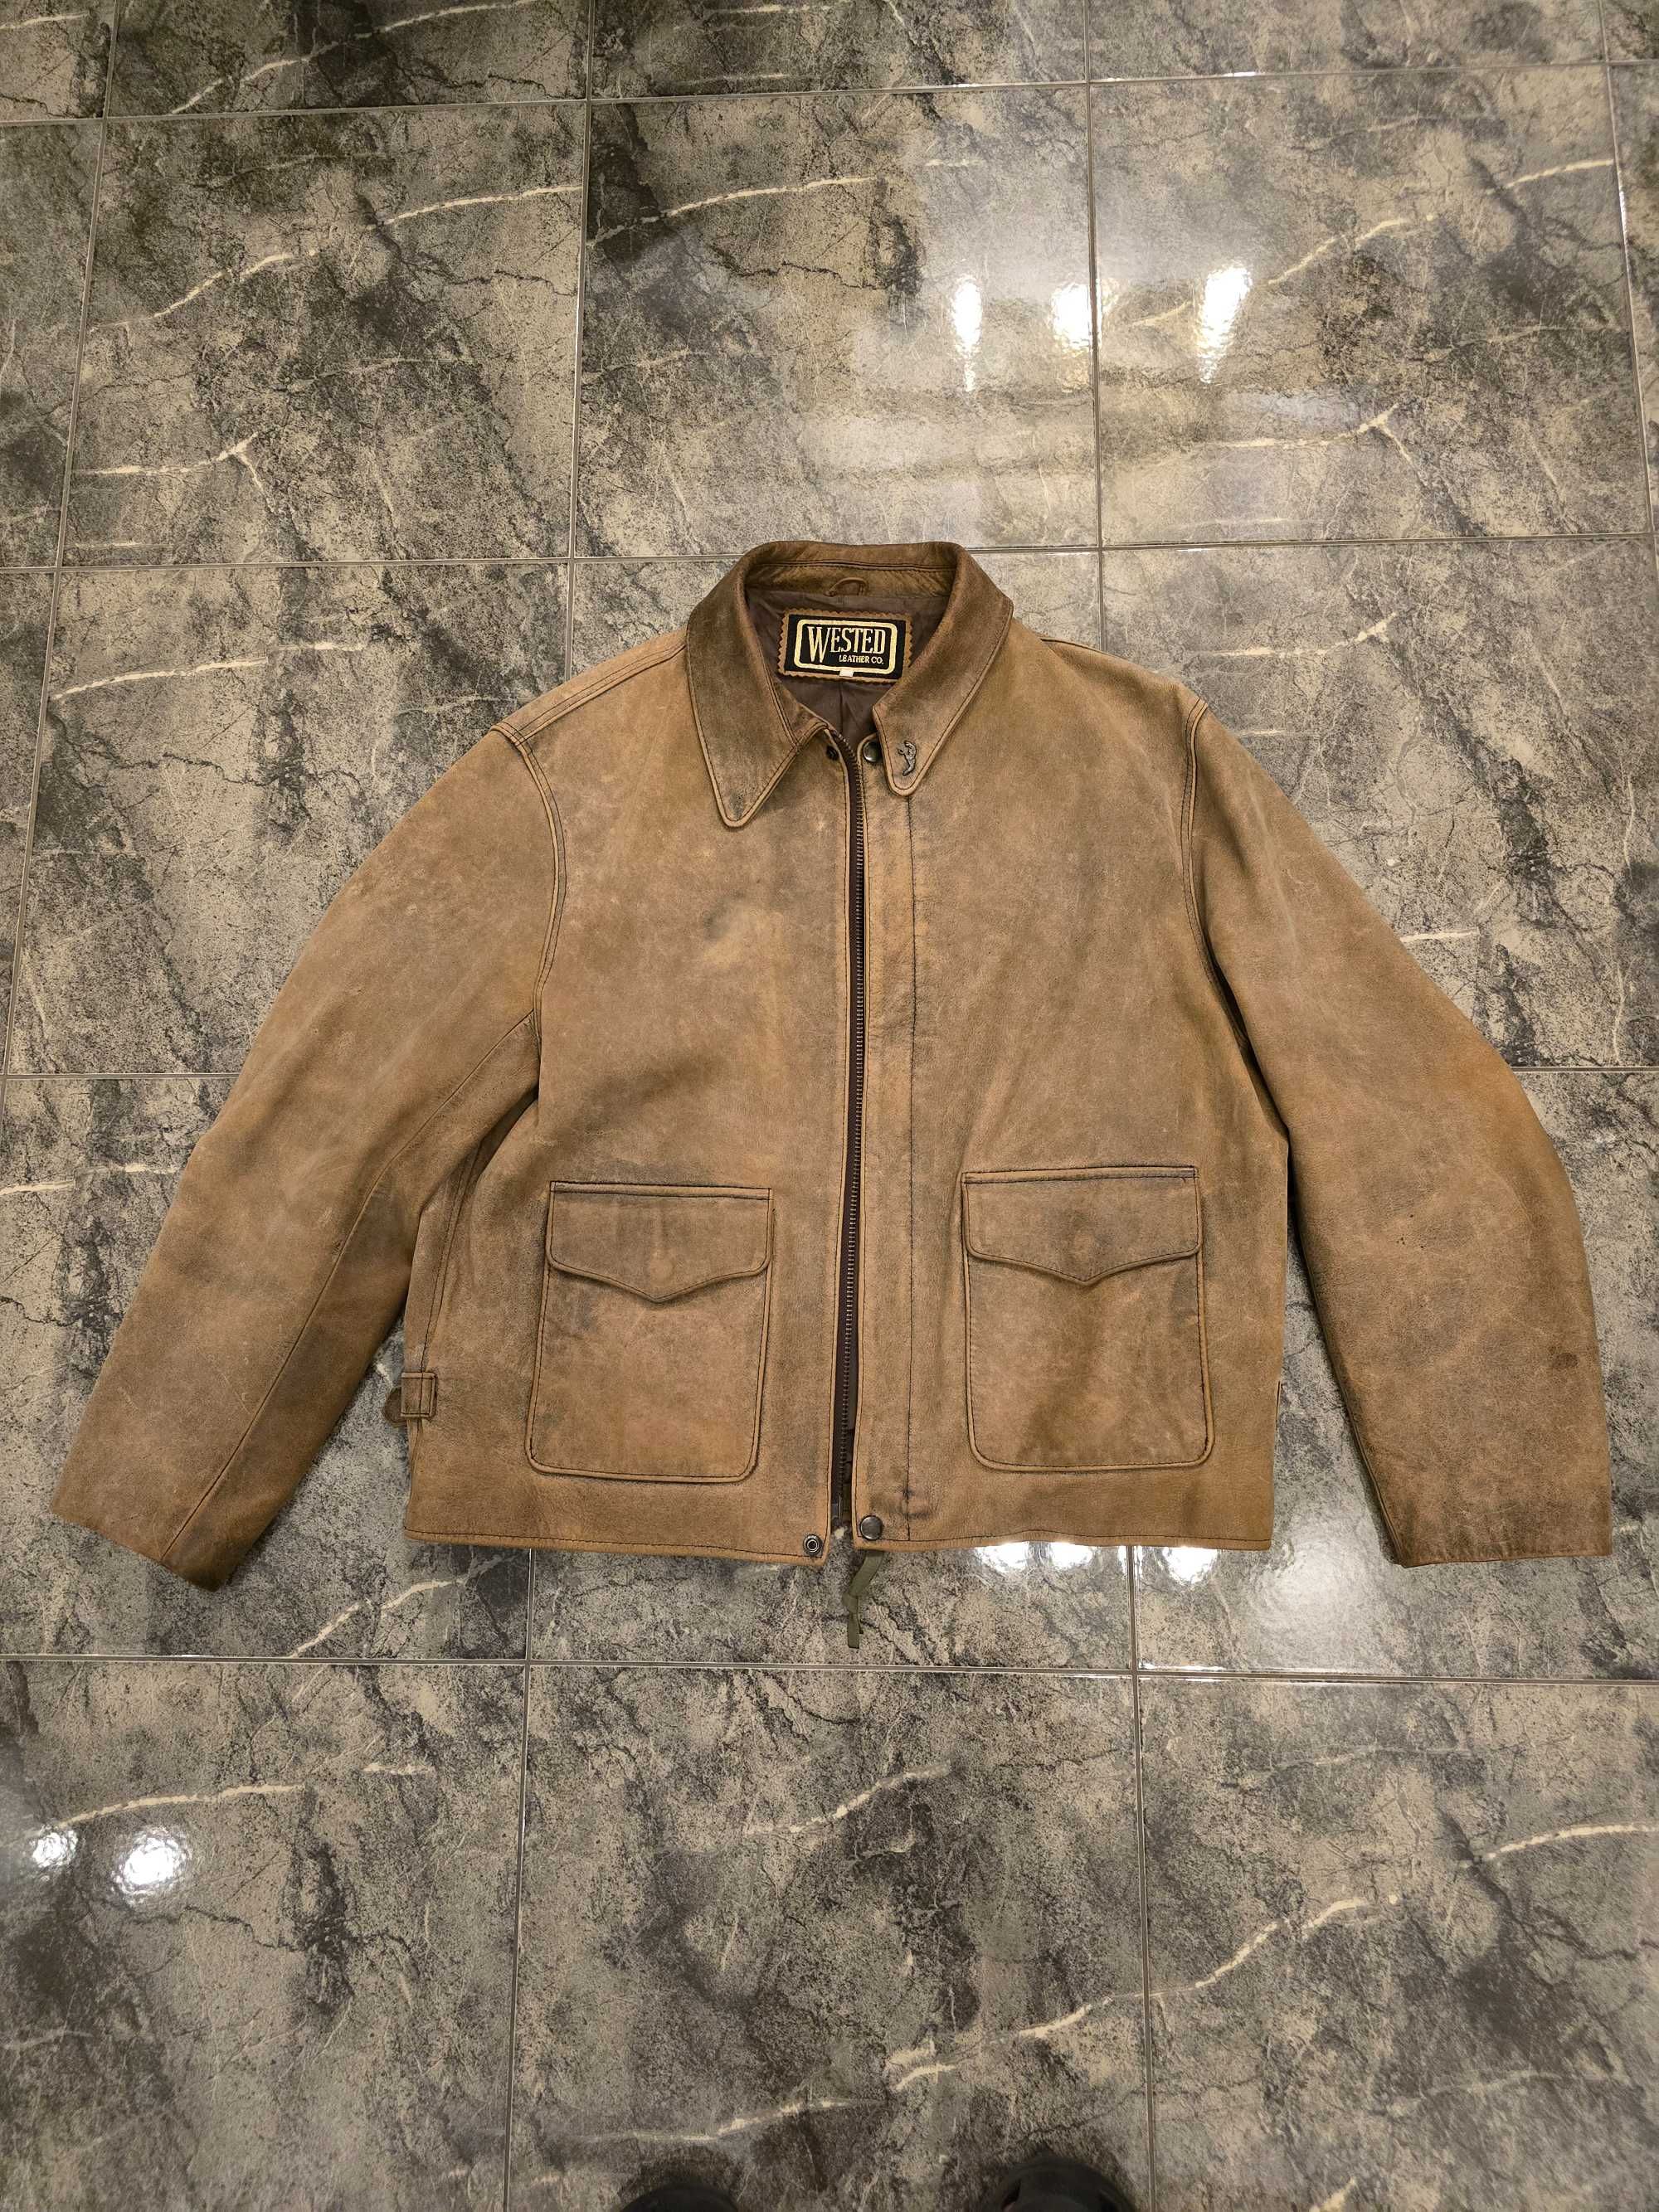 wested leather indiana jones jacket